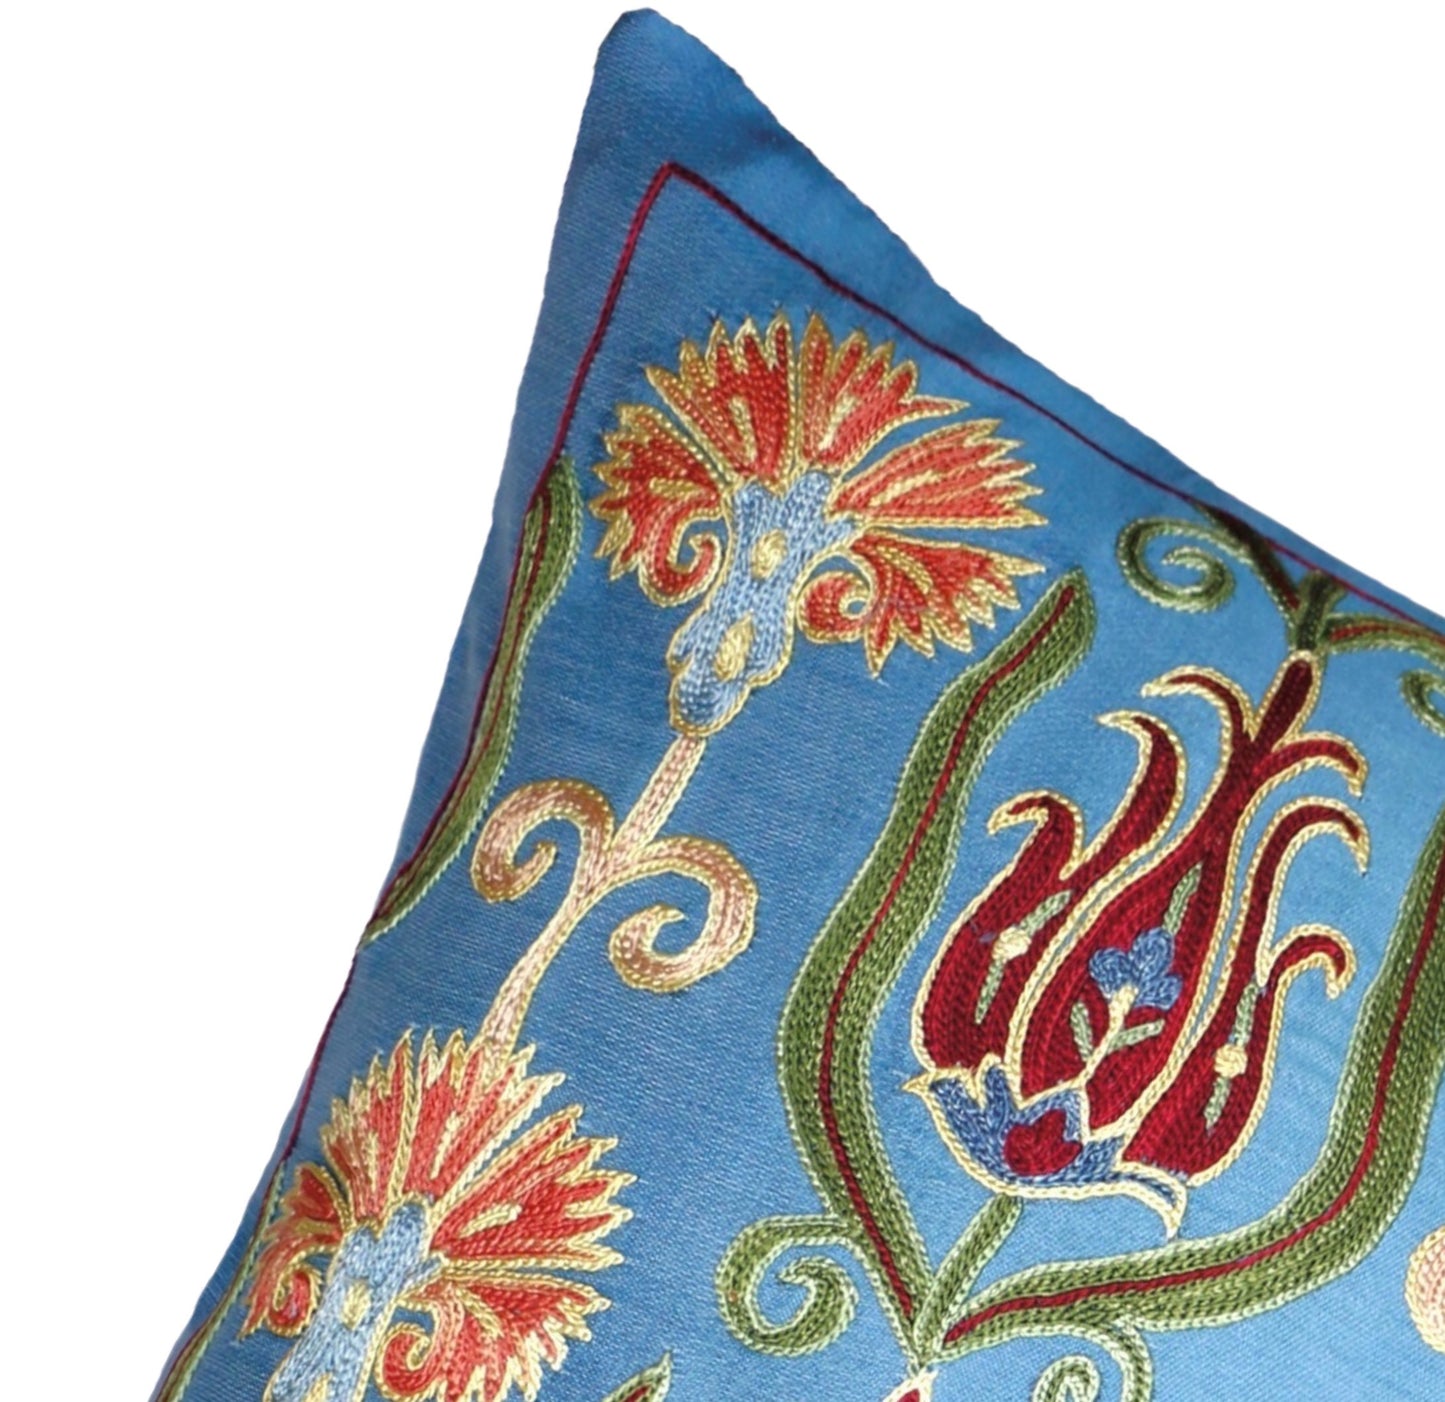 Silk Embroidered Suzani Blue Ottoman Garden Cushion